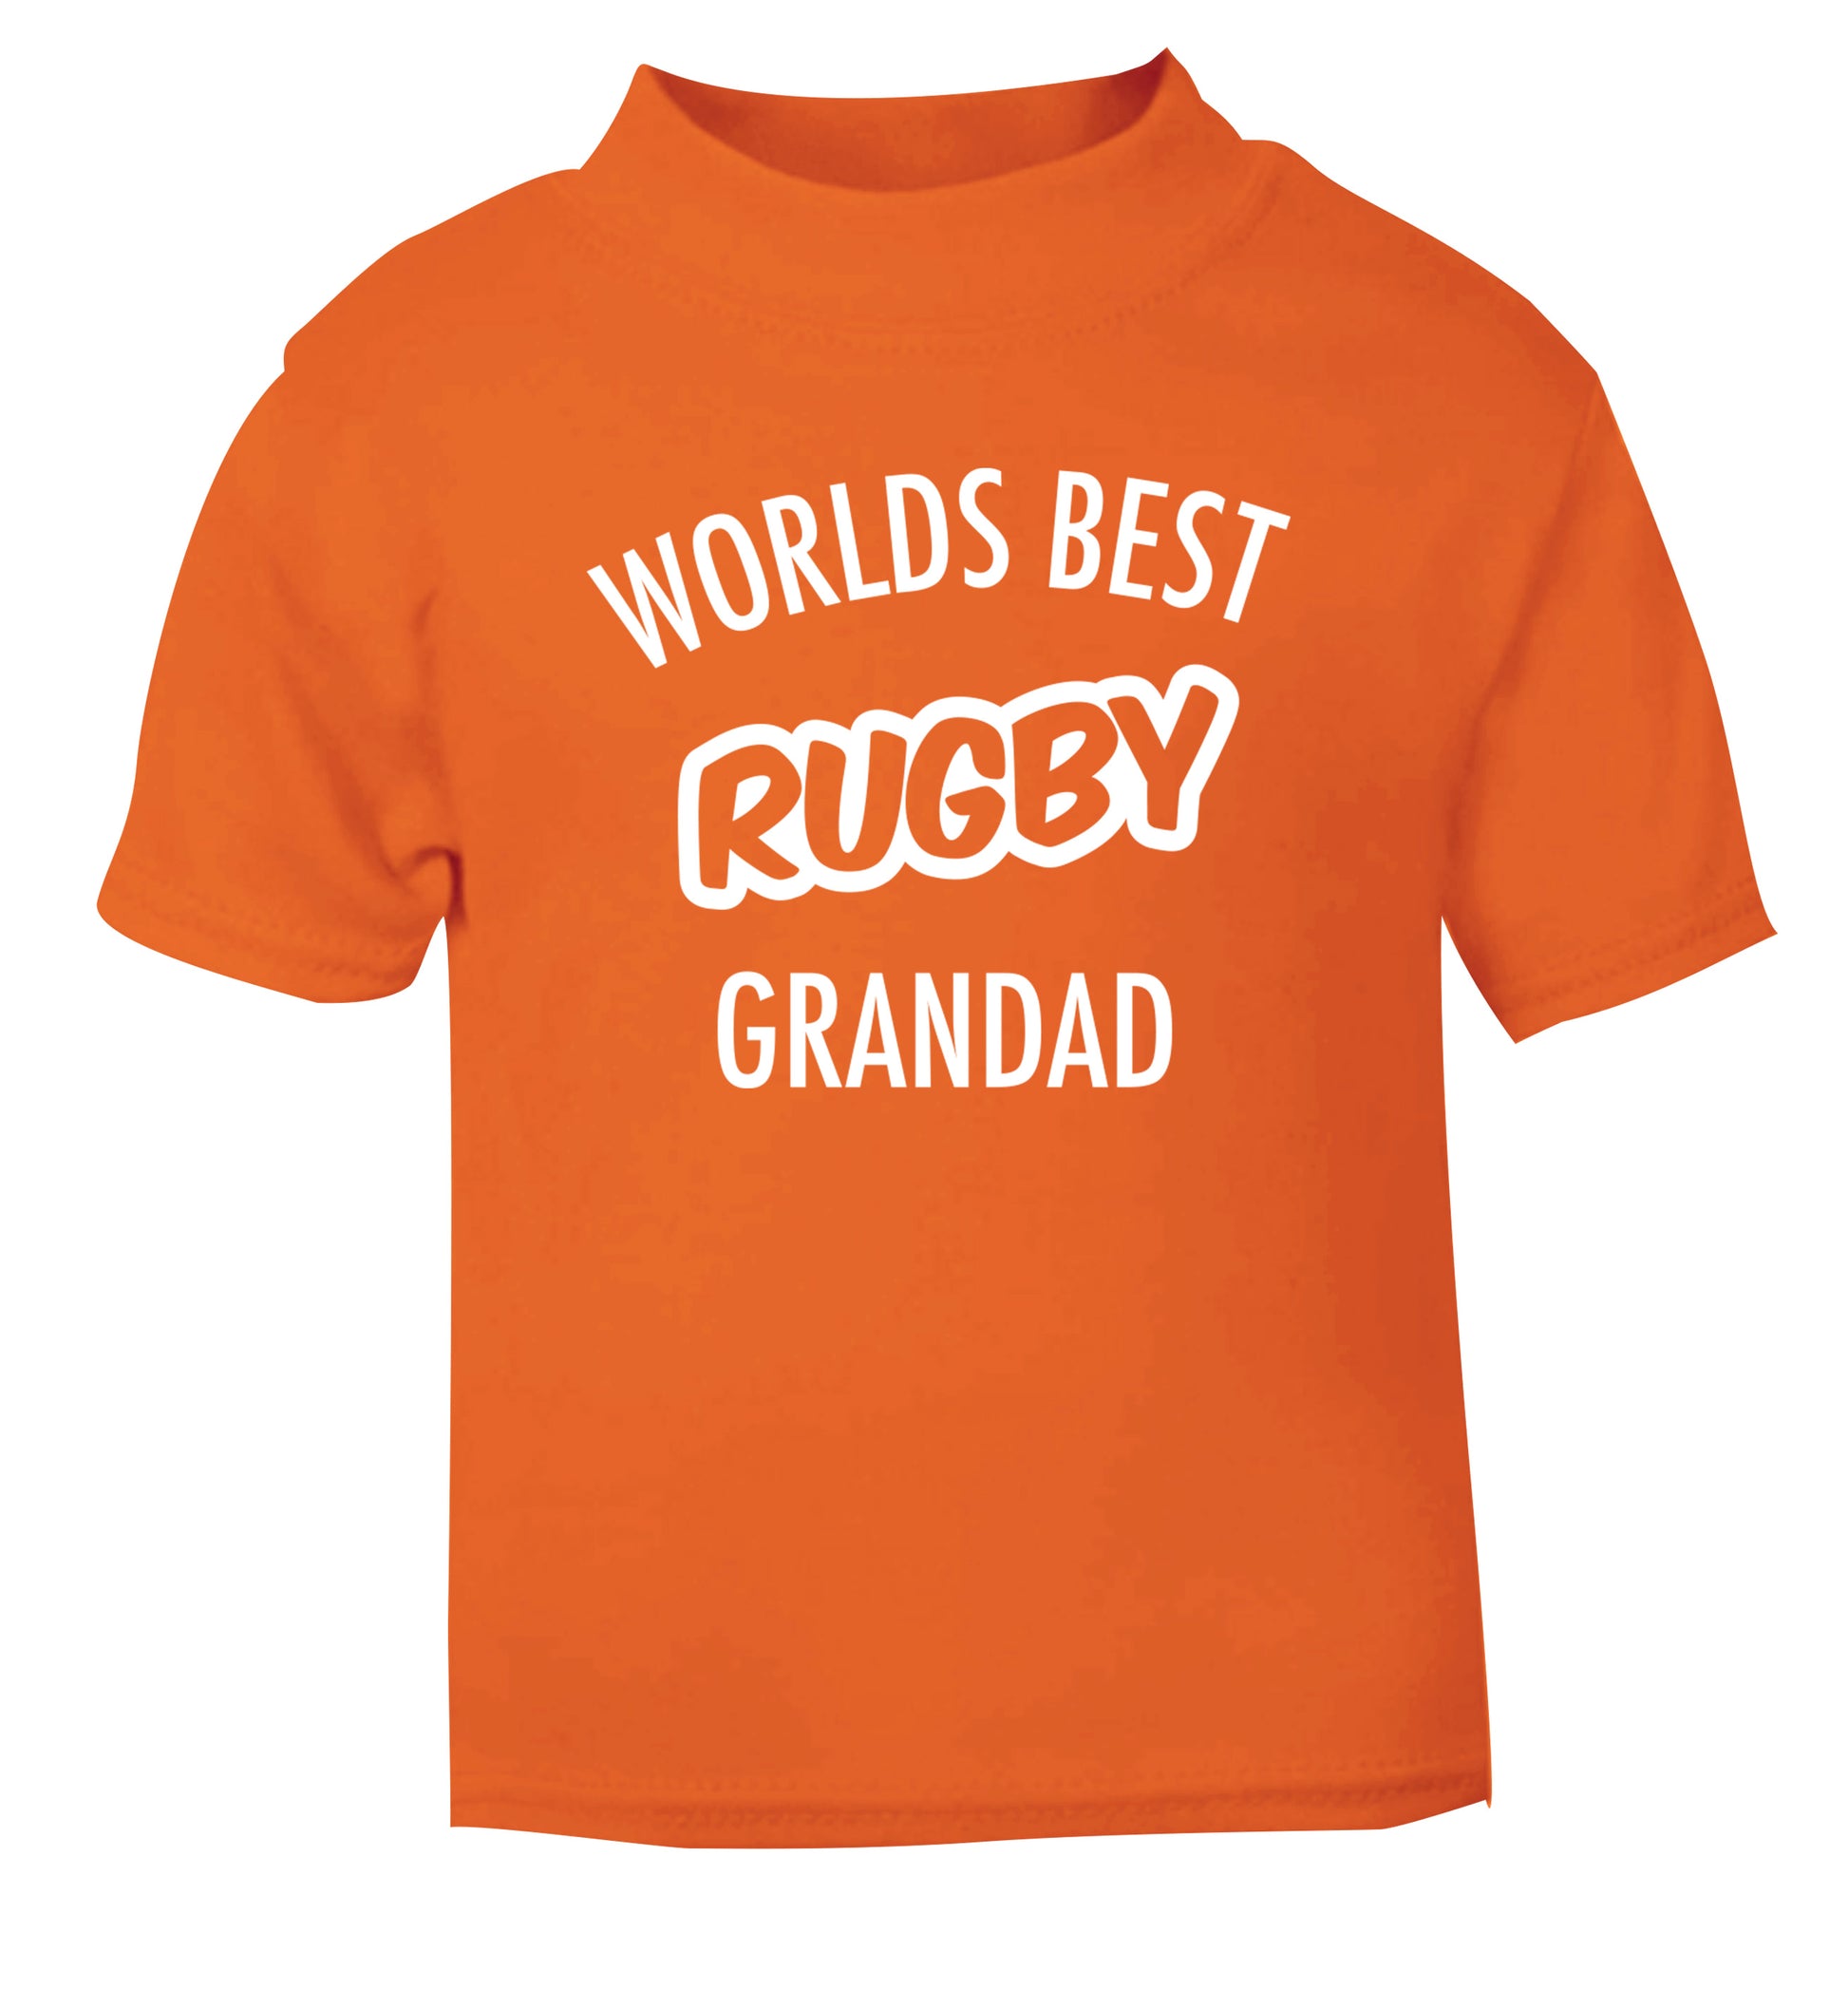 Worlds best rugby grandad orange Baby Toddler Tshirt 2 Years